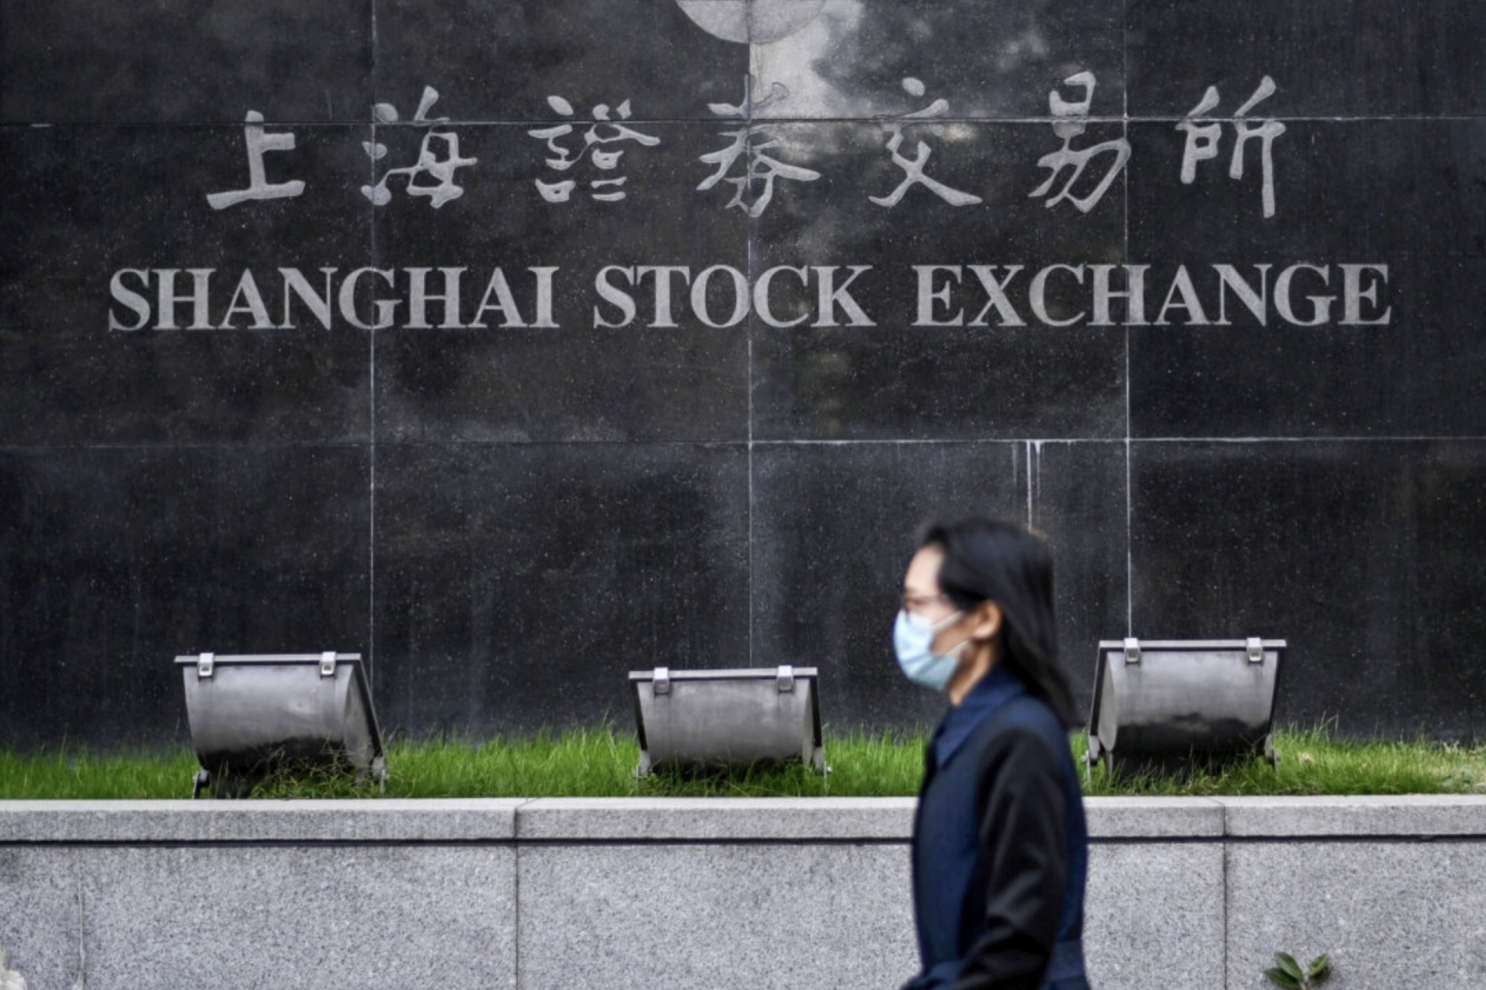 Chuyên gia: Quy định chứng khoán mới của Bắc Kinh làm thị trường thêm hoảng loạn